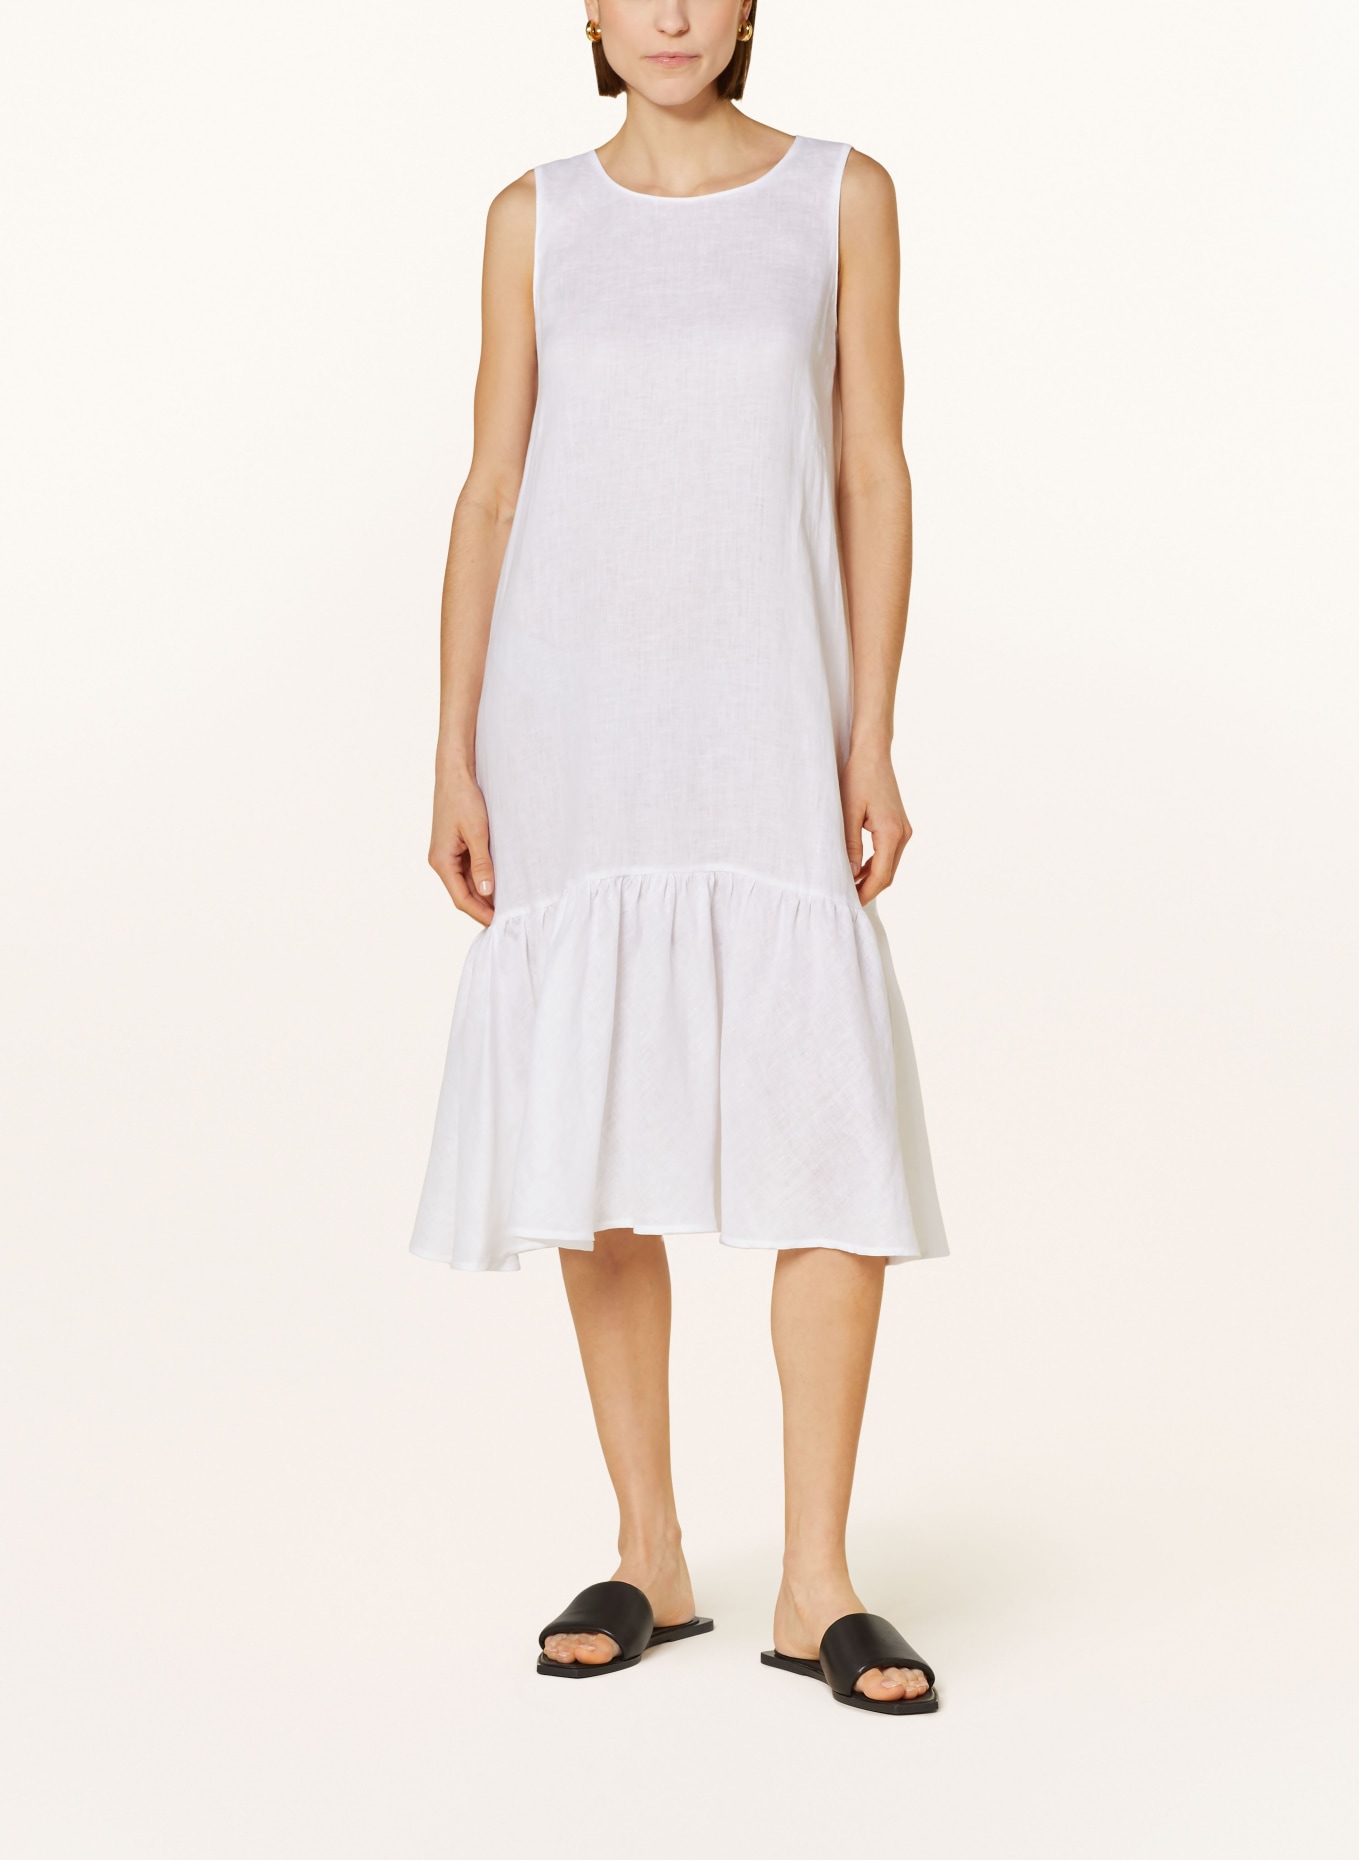 ROBERT FRIEDMAN Linen dress KARENL, Color: WHITE (Image 2)